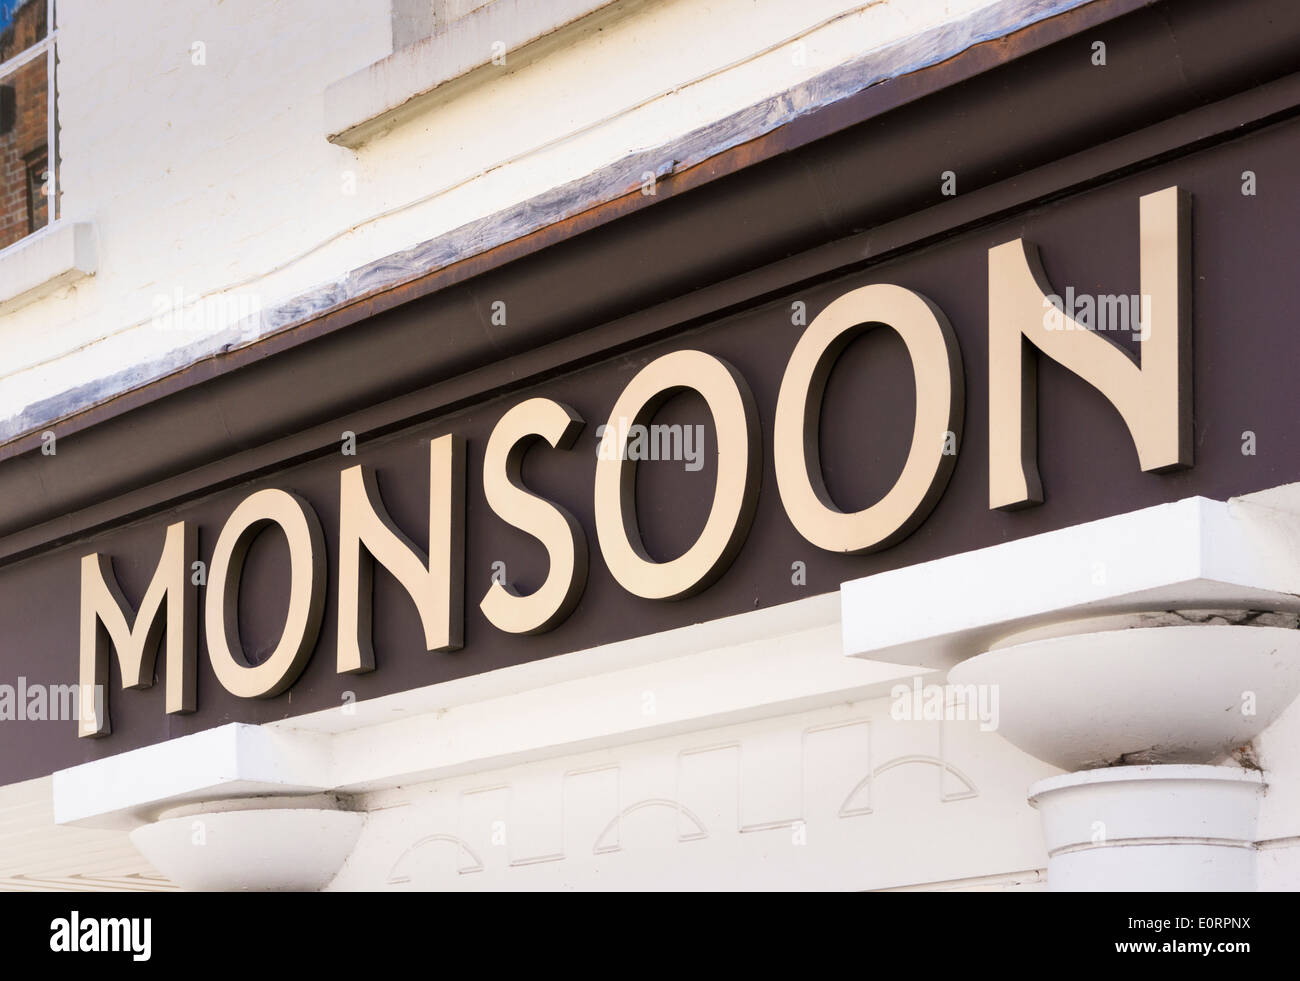 Monsoon clothing store logo, England, UK Stock Photo